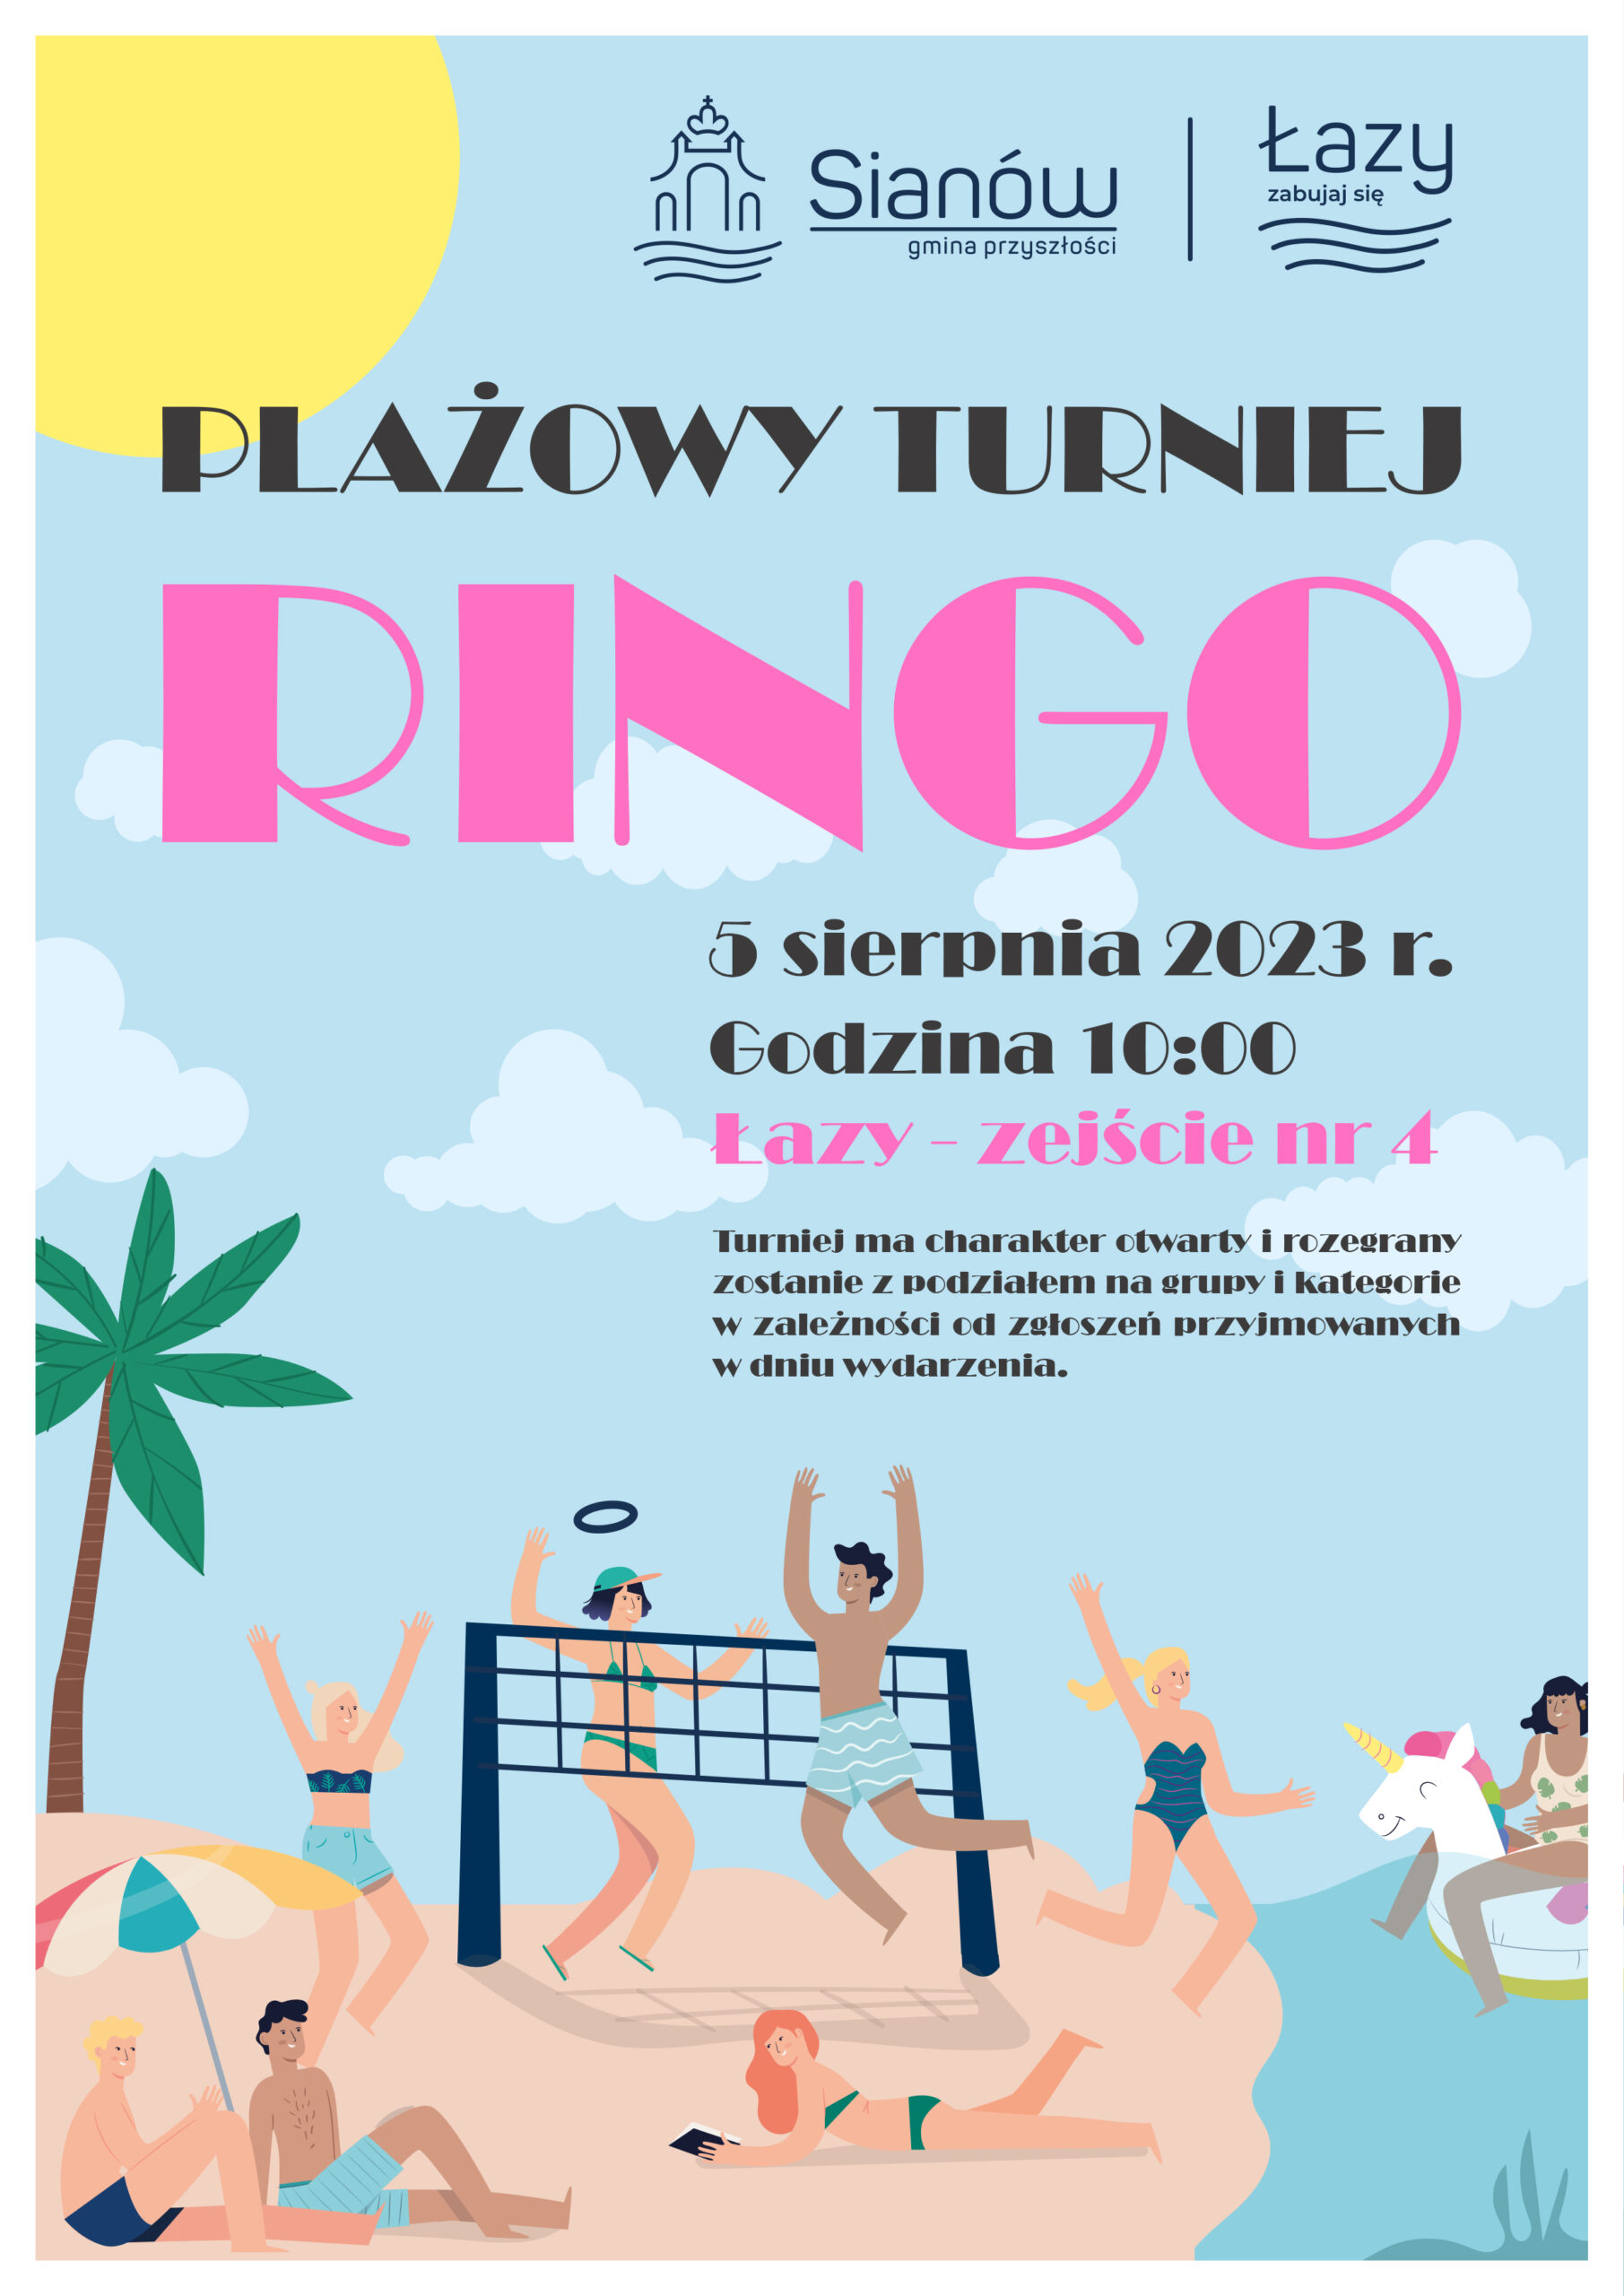 Plażowy turniej Ringo w Łazach